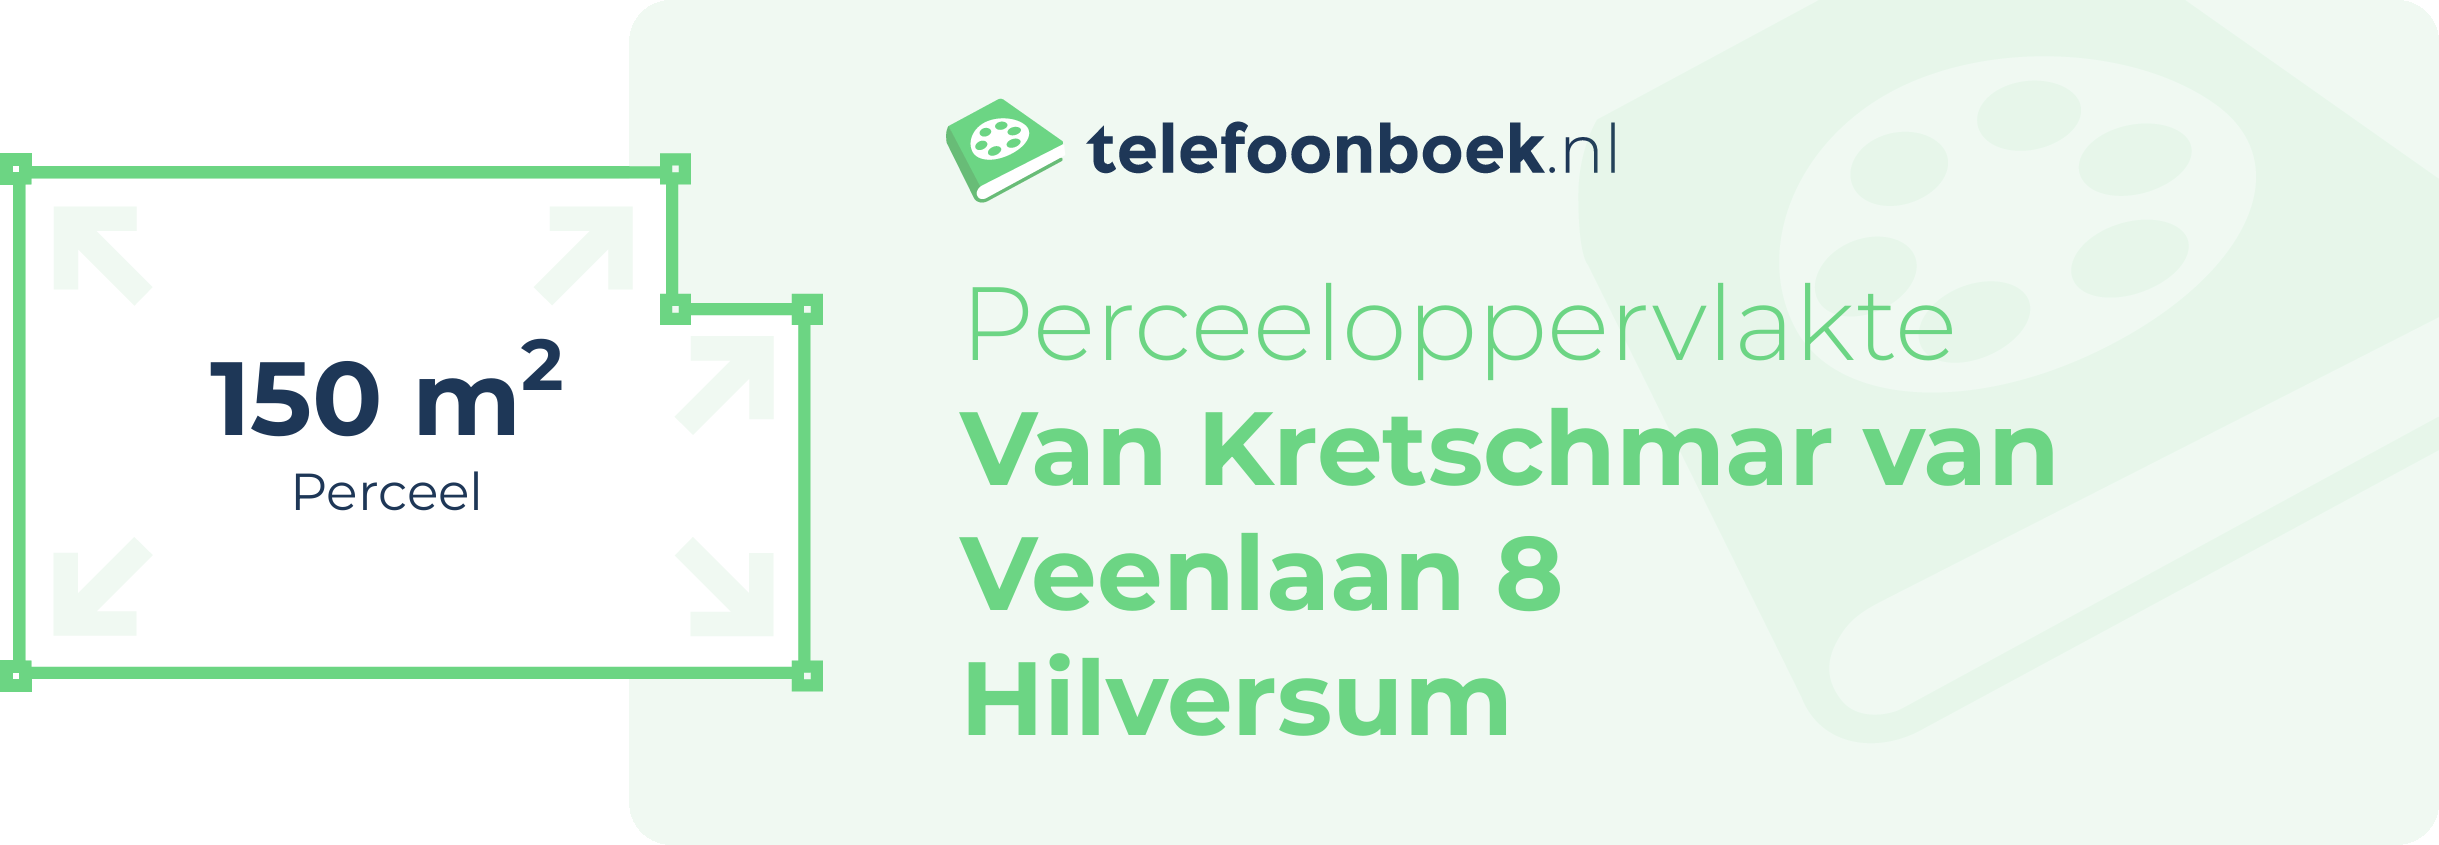 Perceeloppervlakte Van Kretschmar Van Veenlaan 8 Hilversum